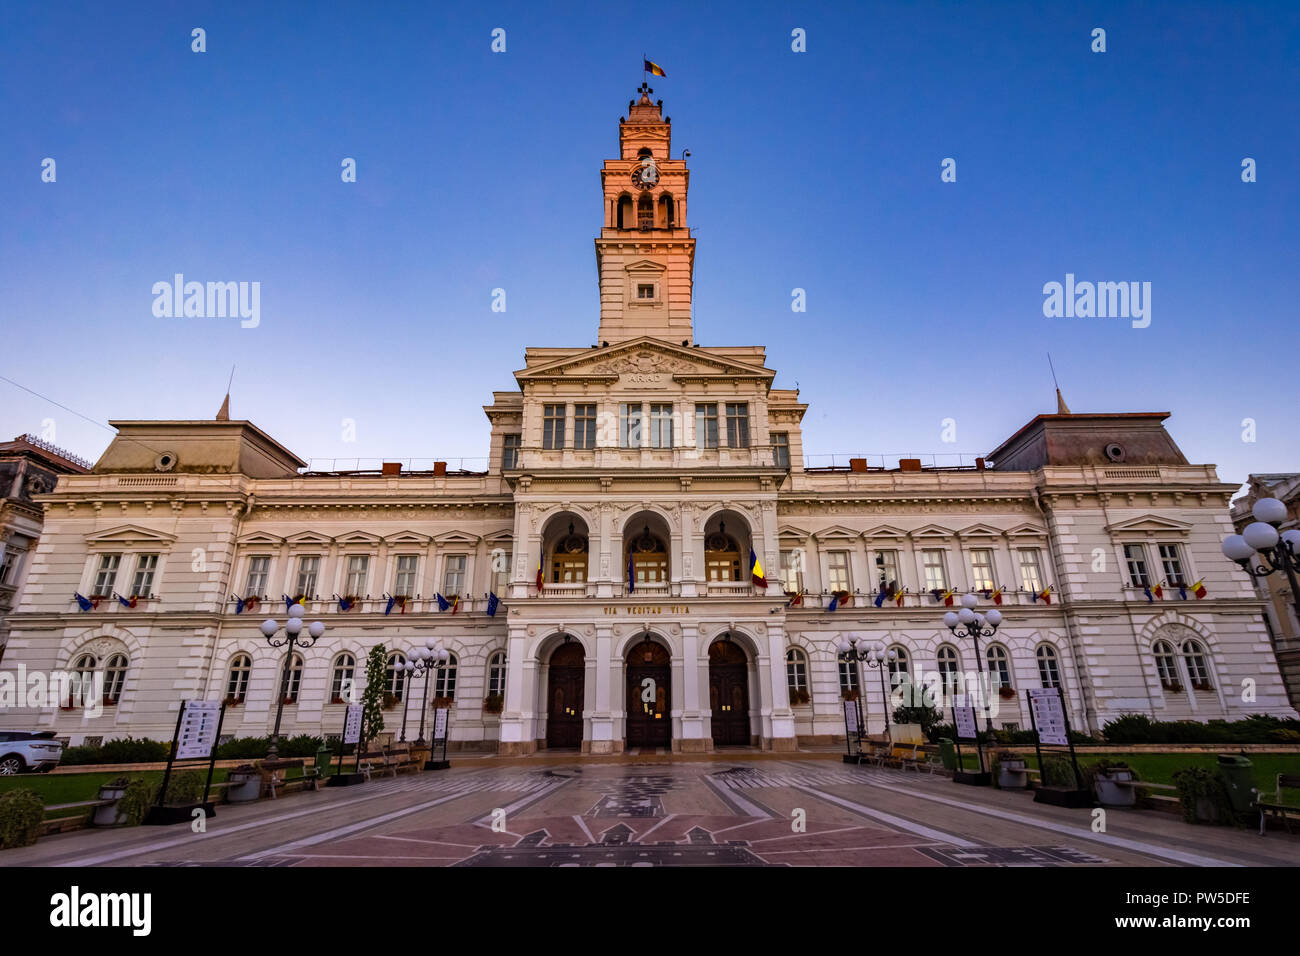 Arad, Romania: Palacein amministrativa il cetral square, che oggi ospita il Municipio di Arad. Foto Stock